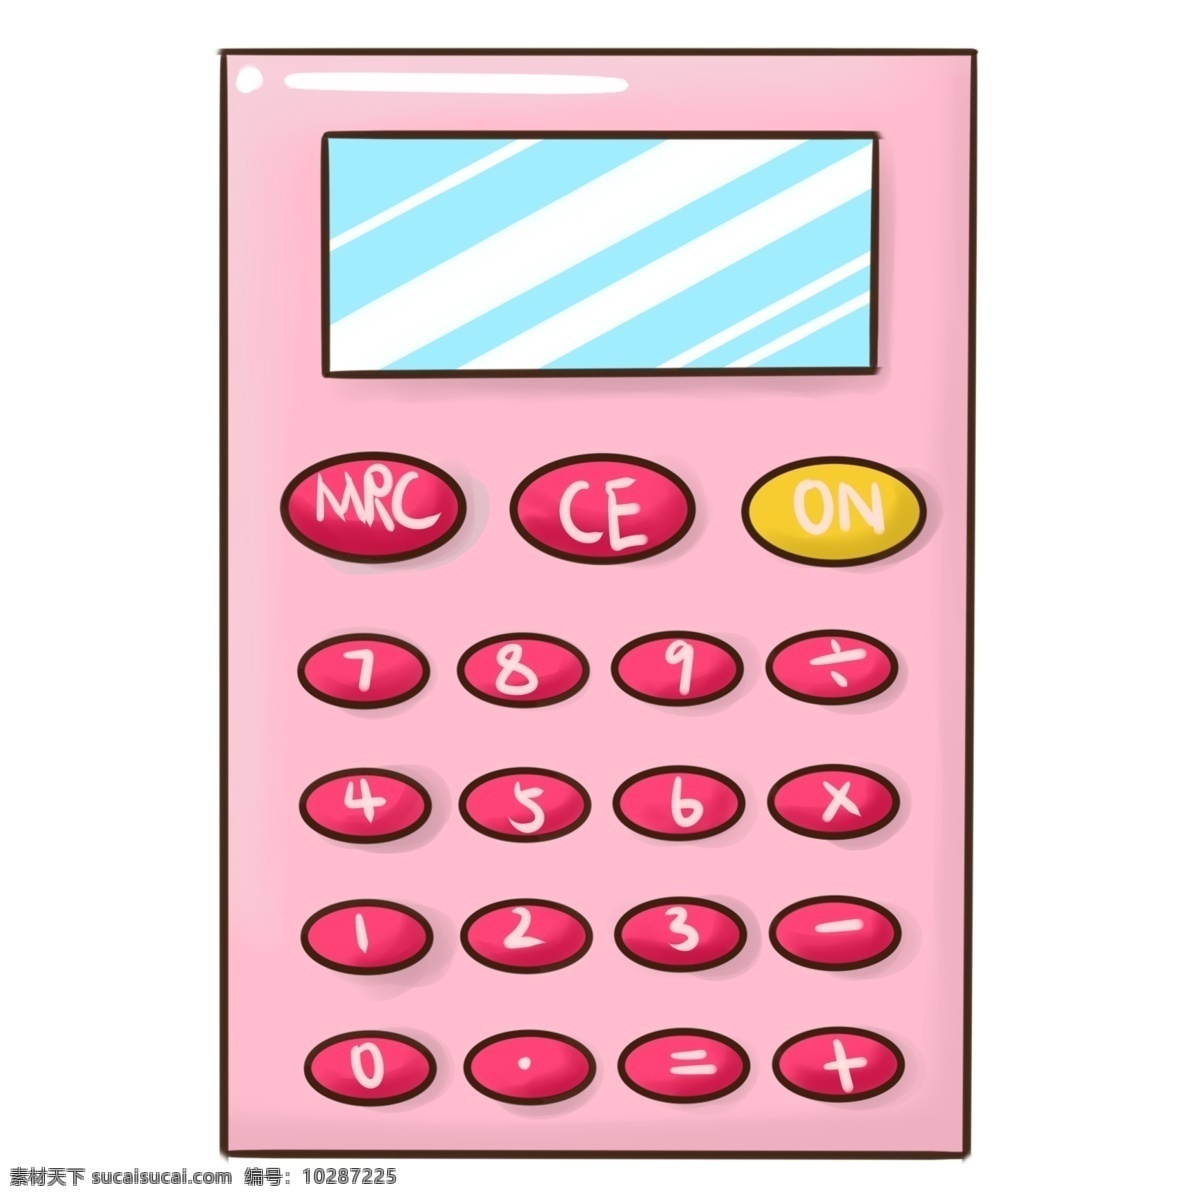 学习 工具 计算器 插画 红色的键盘 卡通插画 学习工具插画 手绘工具插画 粉色的计算器 学习的计算器